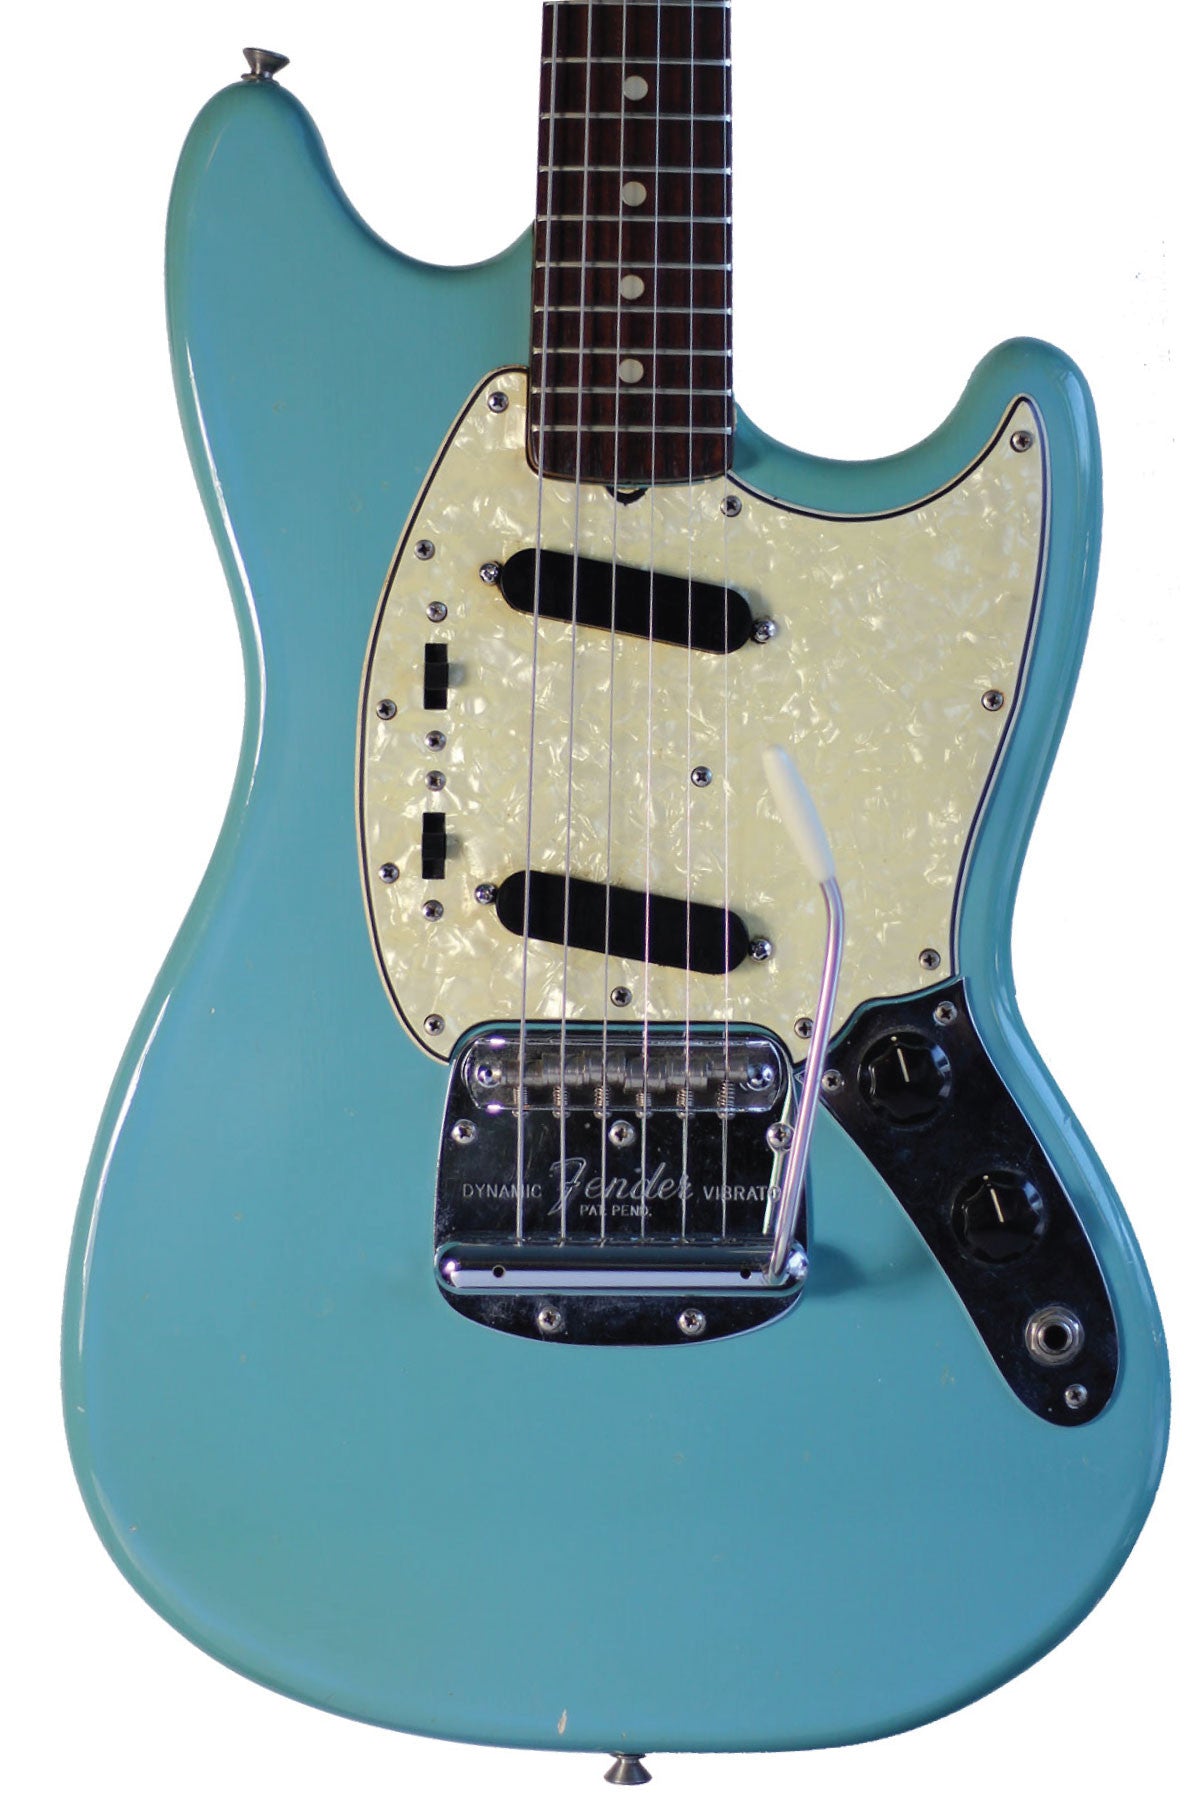 1965 Fender Mustang - Vintage Guitars